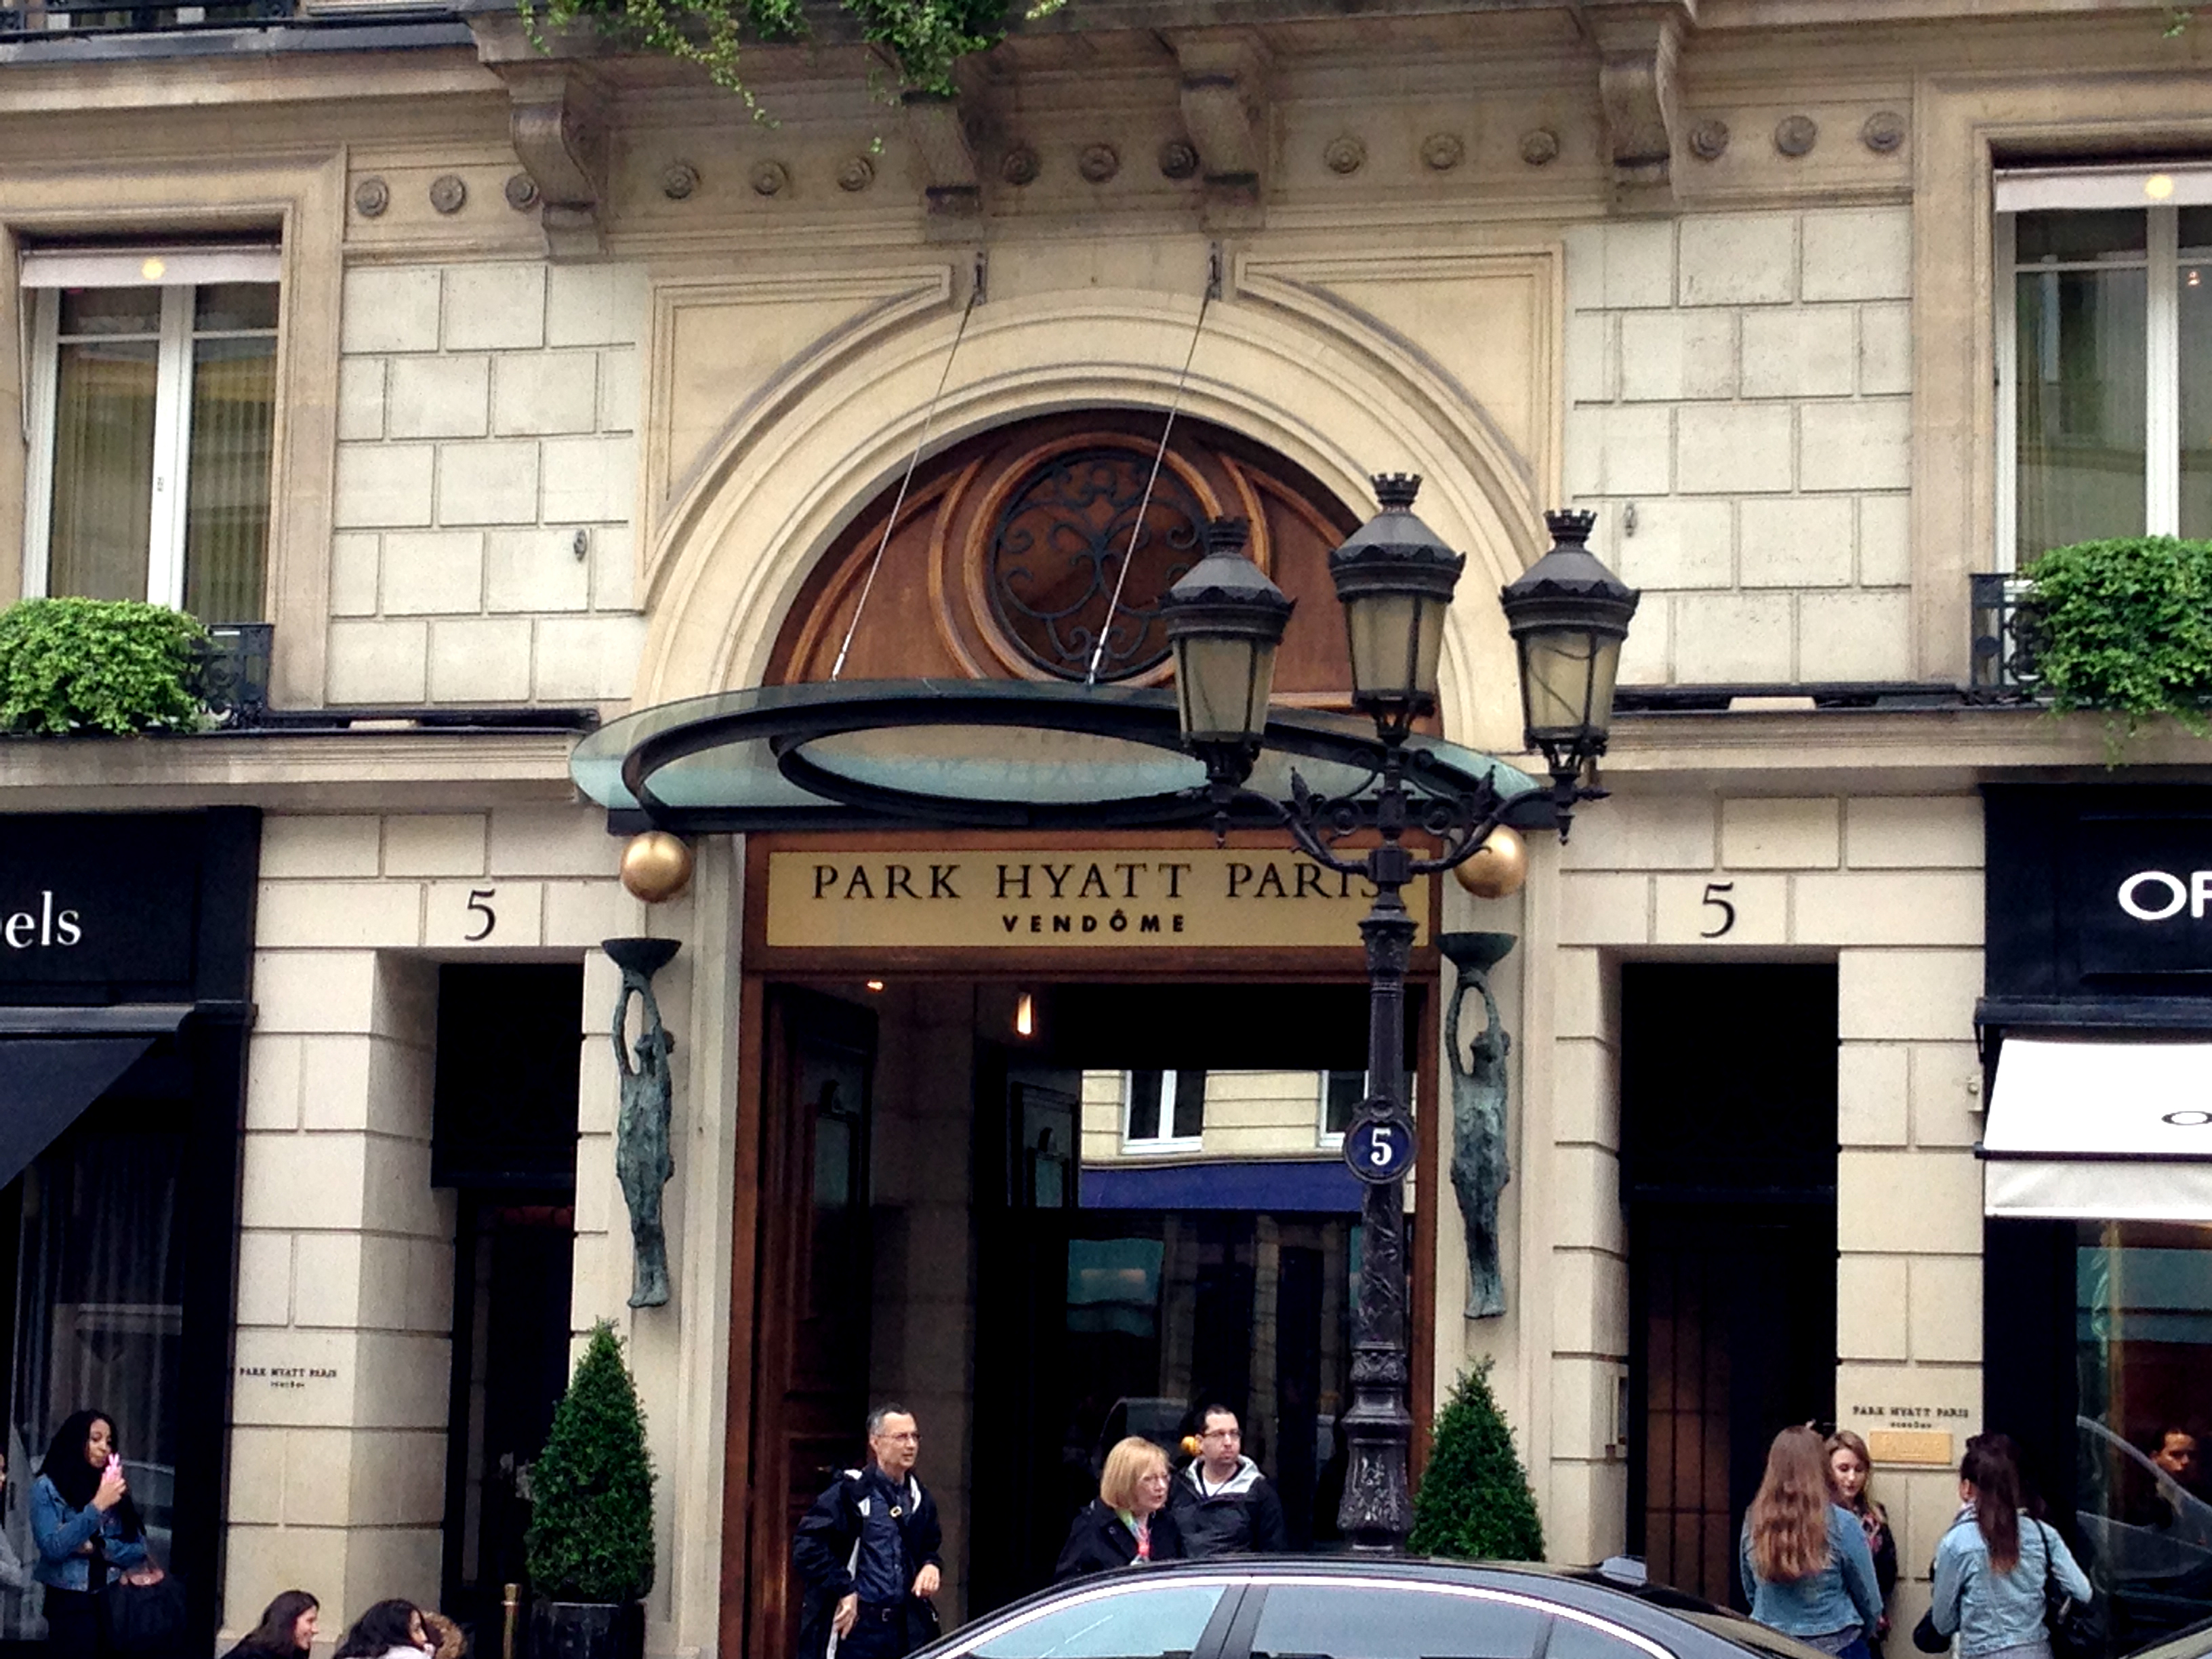 The Park Hyatt Paris Vendome